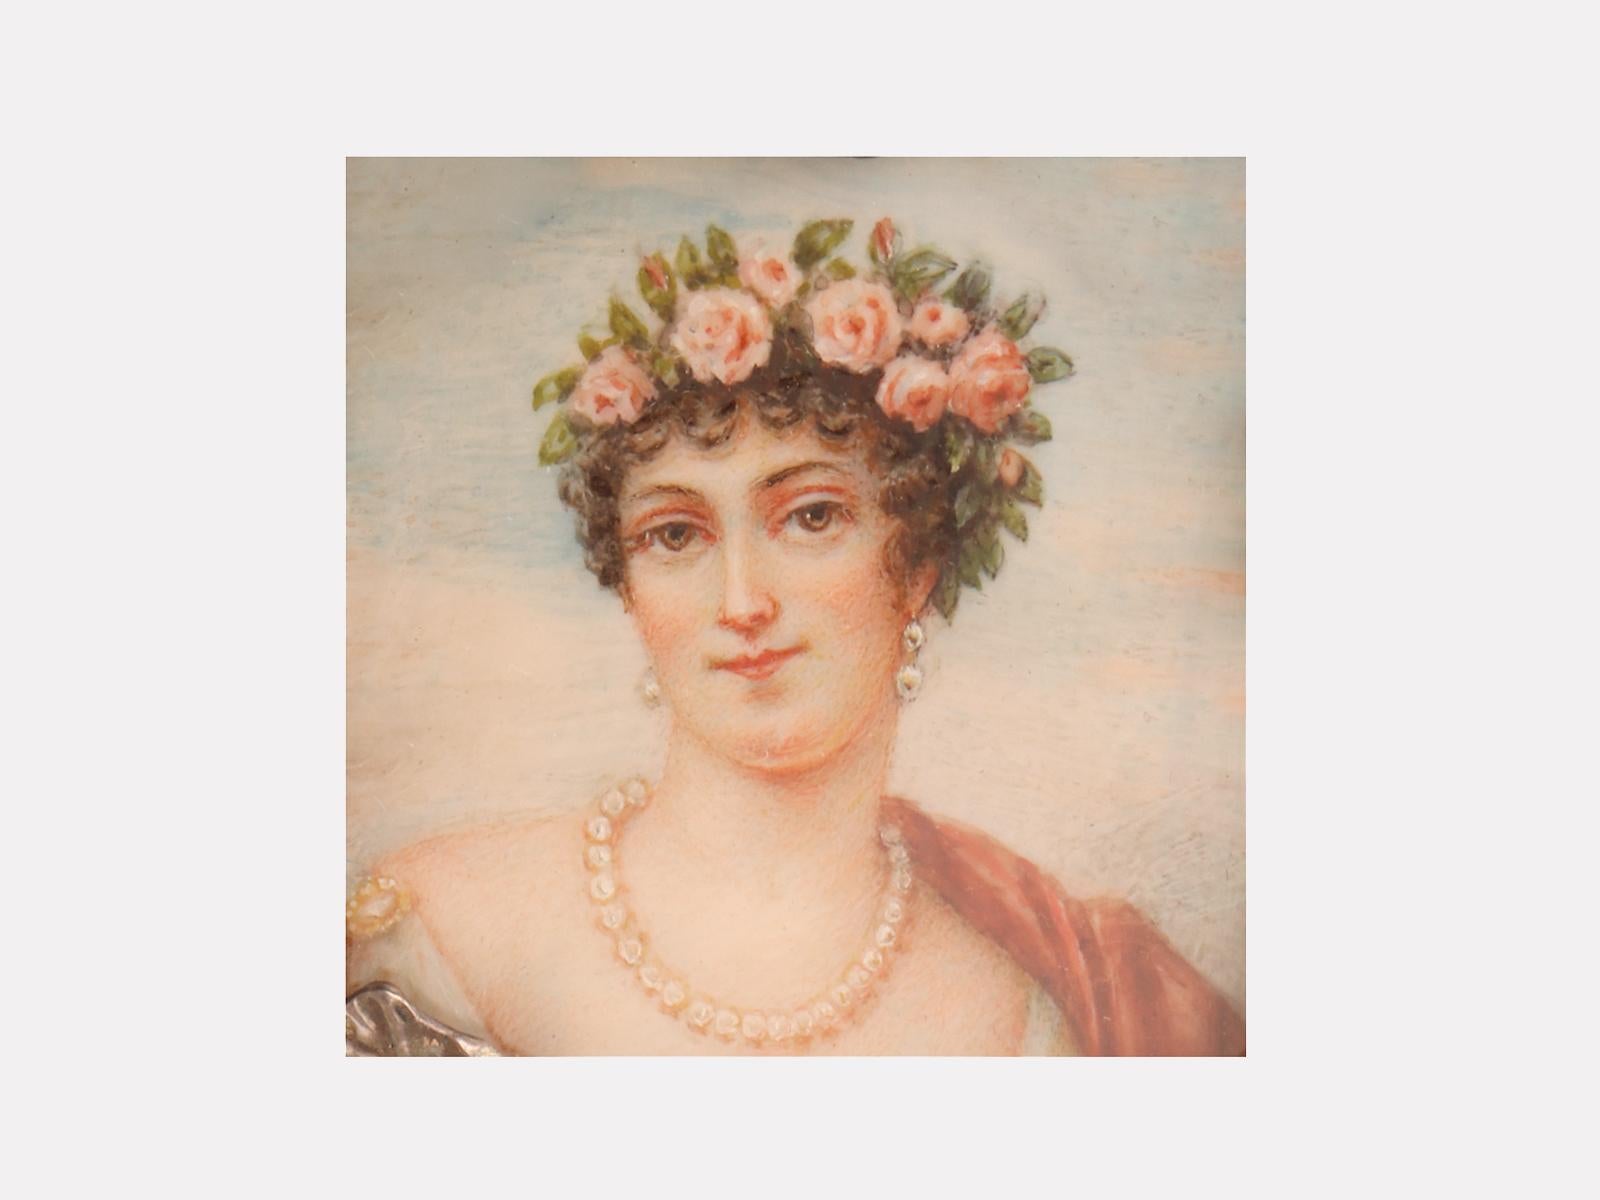 Runde silberne Schnupftabakdose mit geprägten Irisblüten. Die mit Aquarellfarben auf Elfenbein gemalte Miniatur zeigt eine Frau mit einer Rosenkrone im Haar und einer Perlenkette. Gezeichnet A. Baron. Frankreich, um 1900. (VERSAND NUR IN DIE EU)